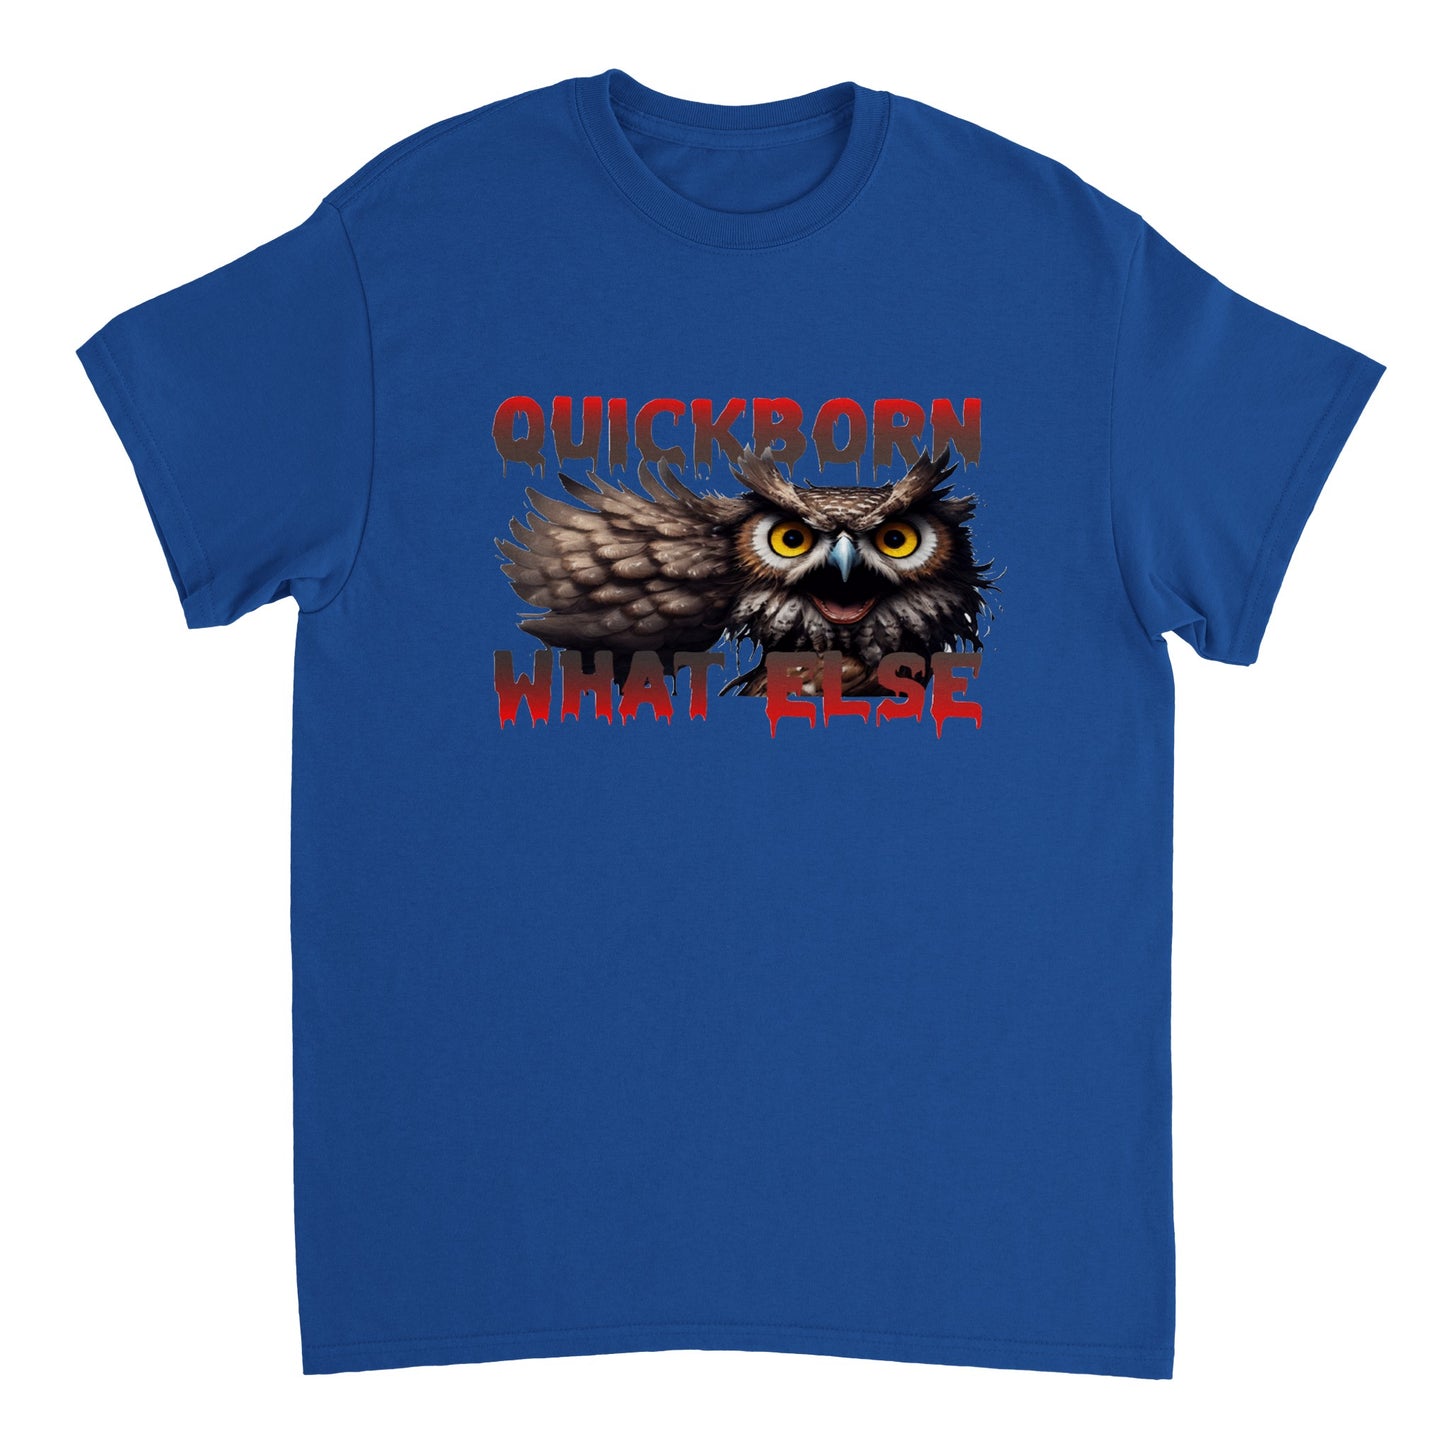 Schweres Unisex T-Shirt mit Rundhalsausschnitt und Gussiflash Logo